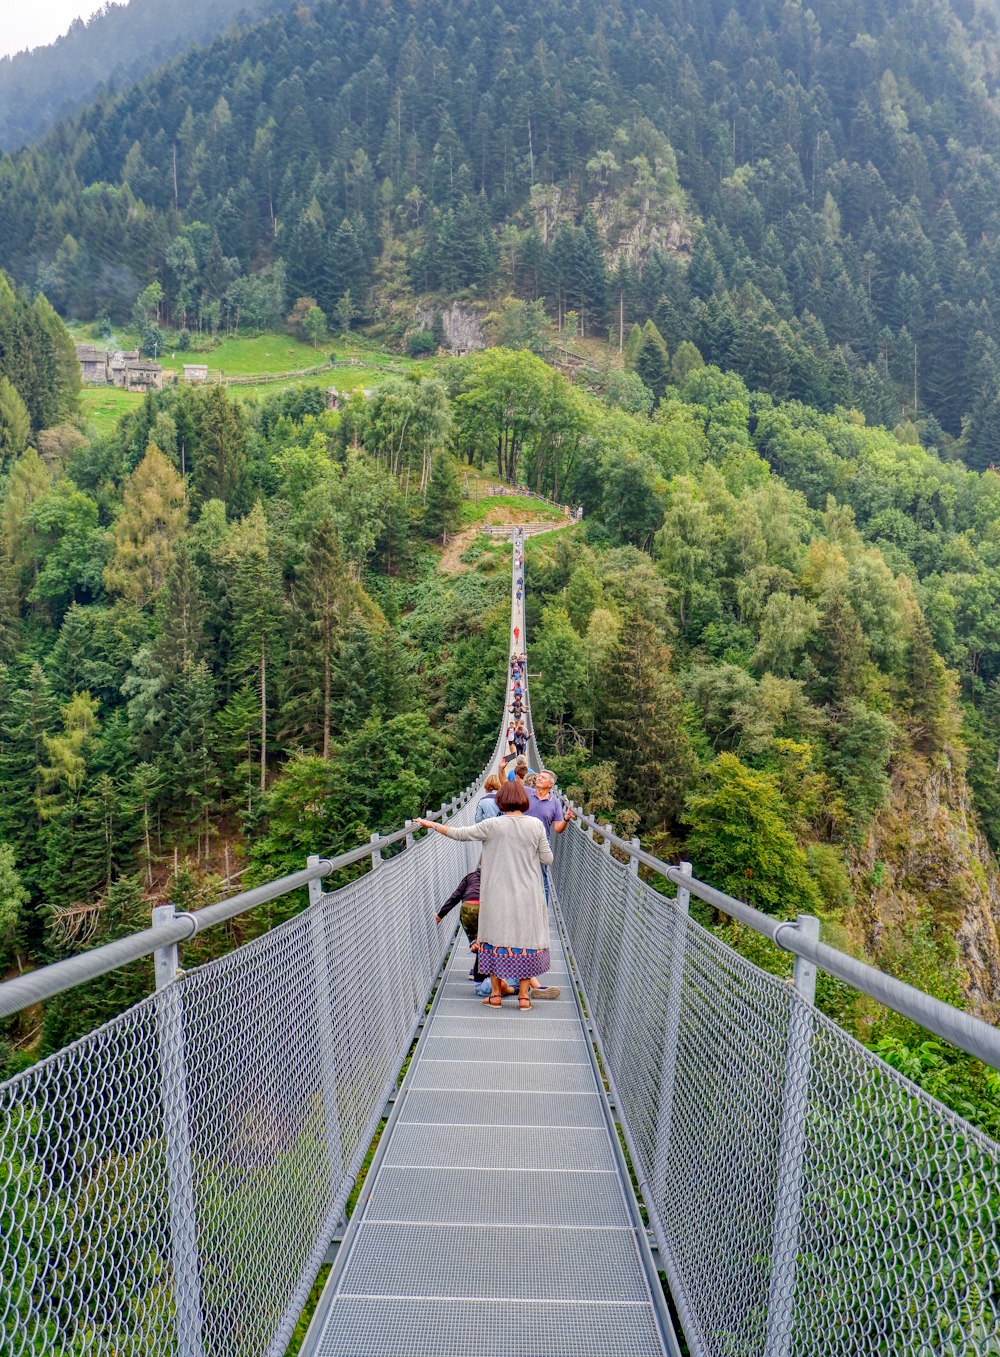 Menschen, die tagsüber auf einer Hängebrücke über grüne Bäume laufen